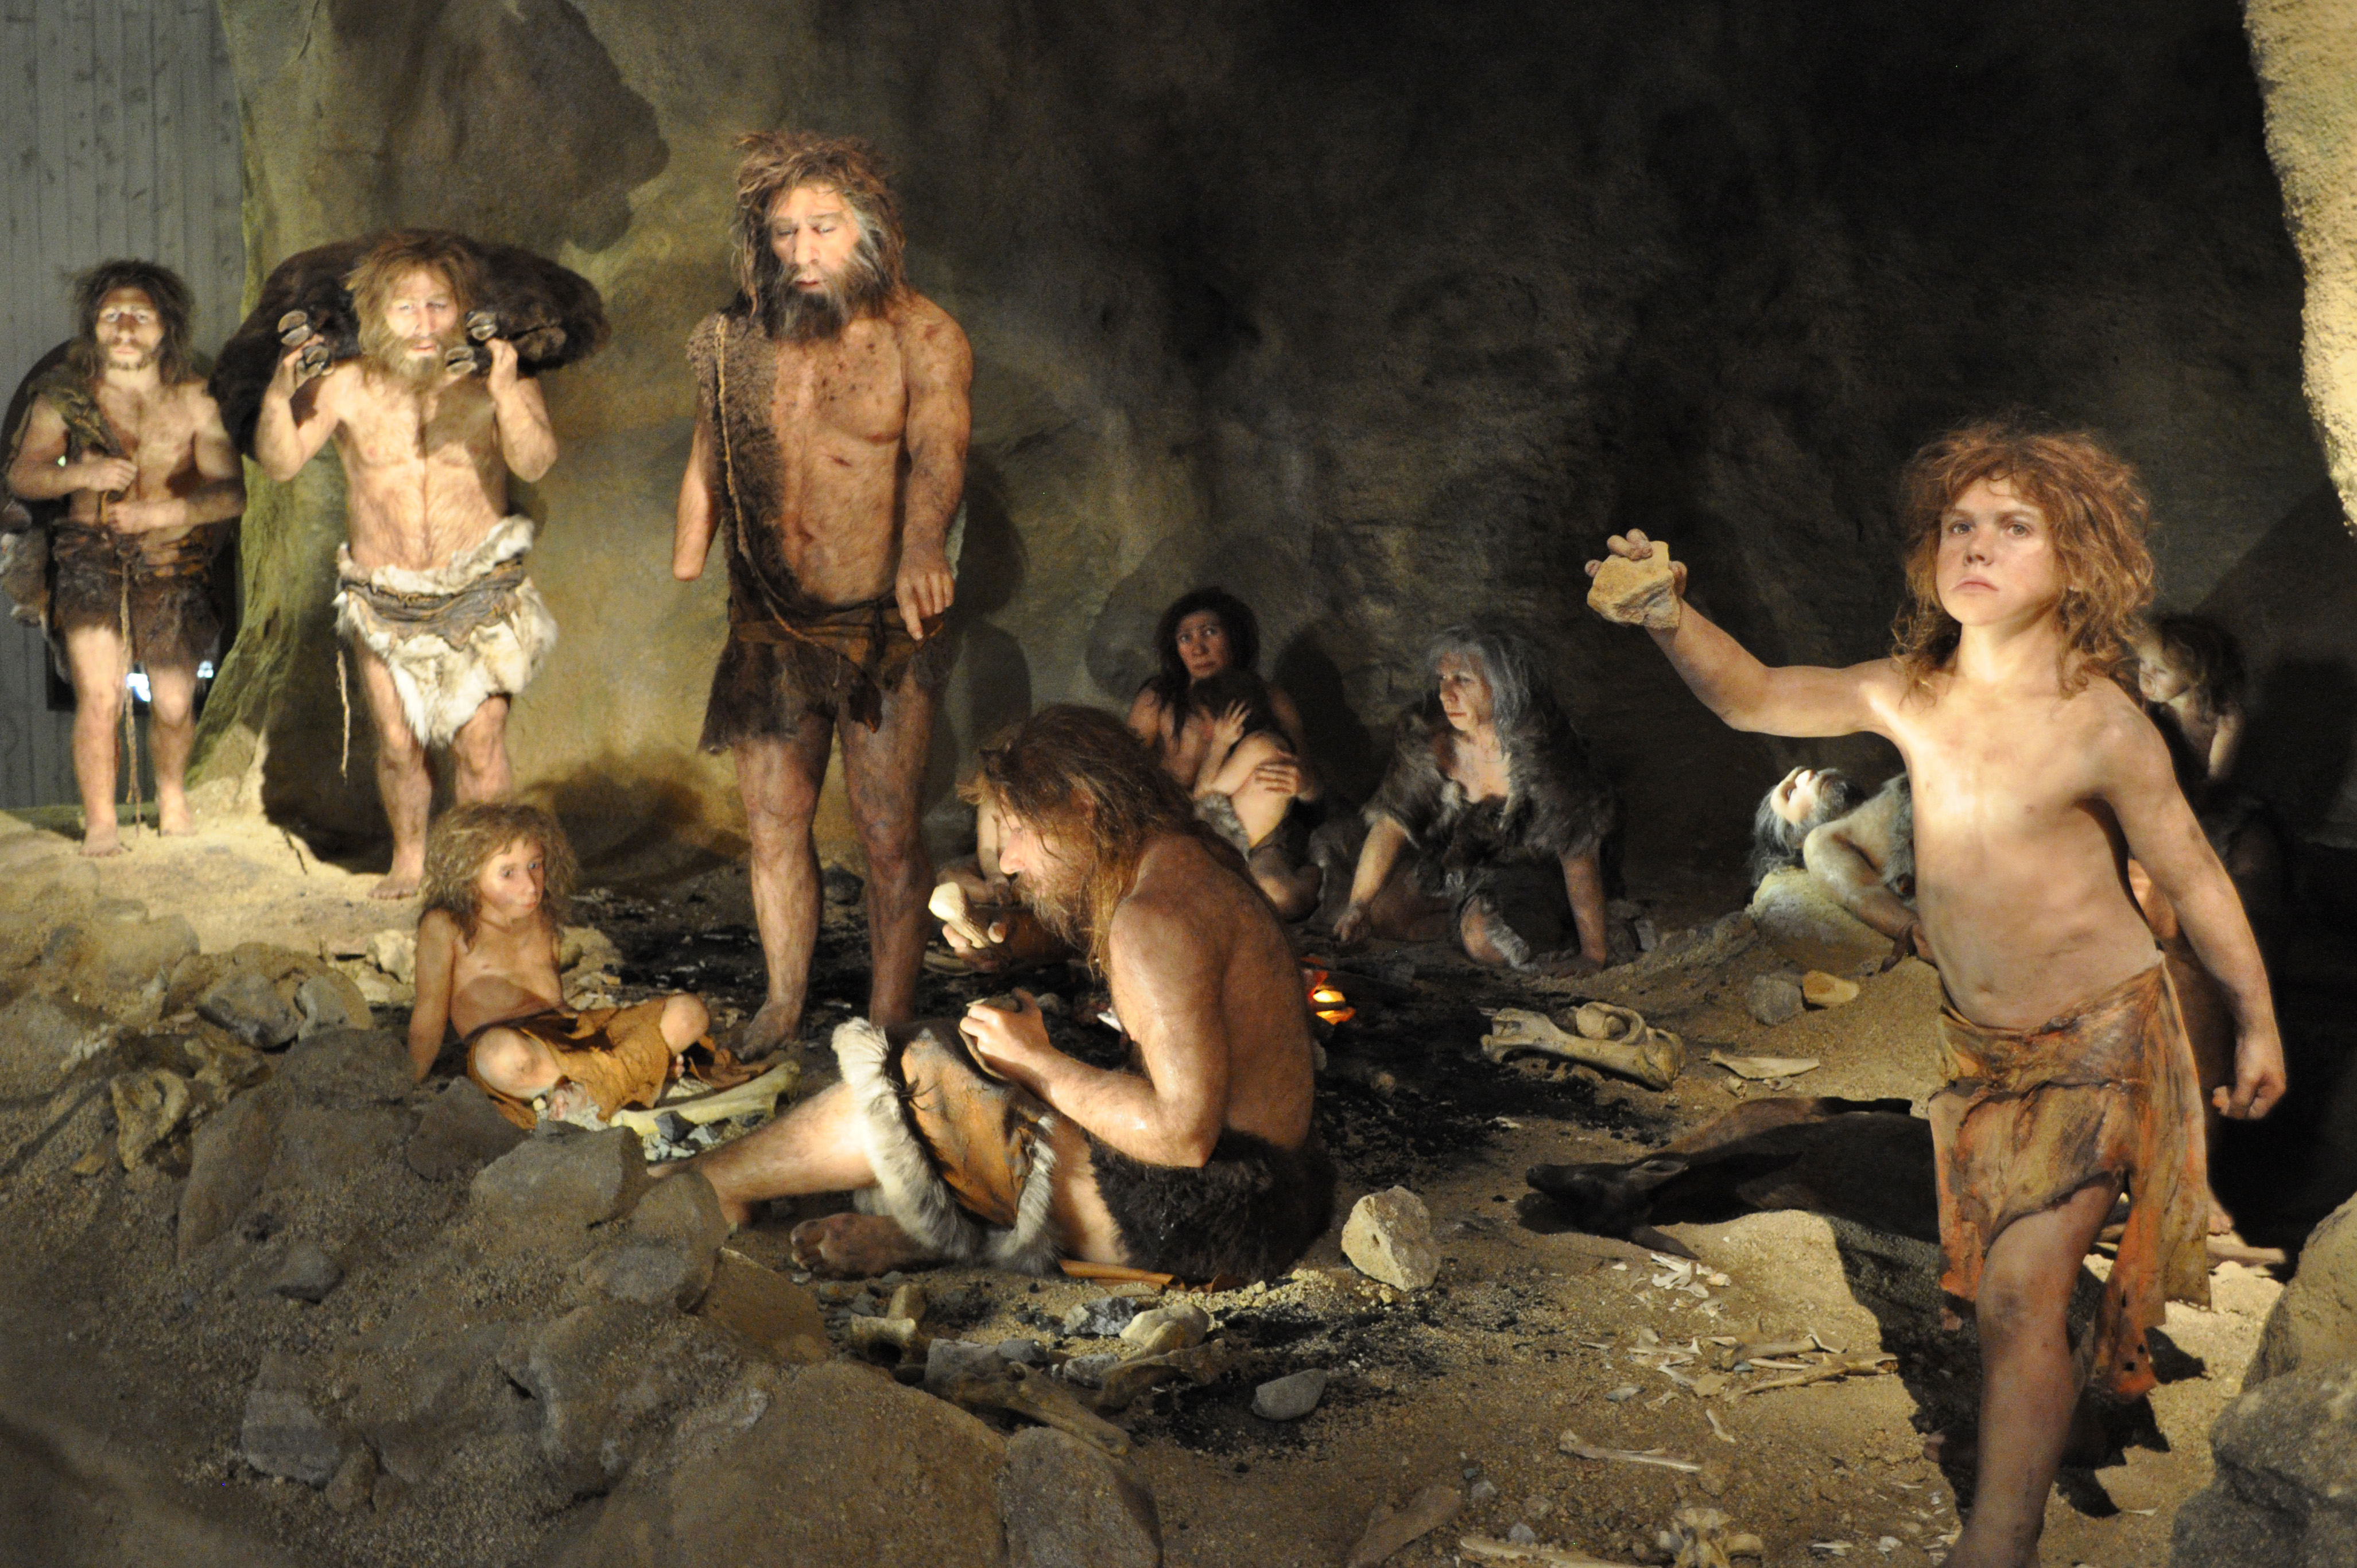 “Neandertalak: amaierarik gabeko ikerketa” izeneko hitzaldia  Bilbon